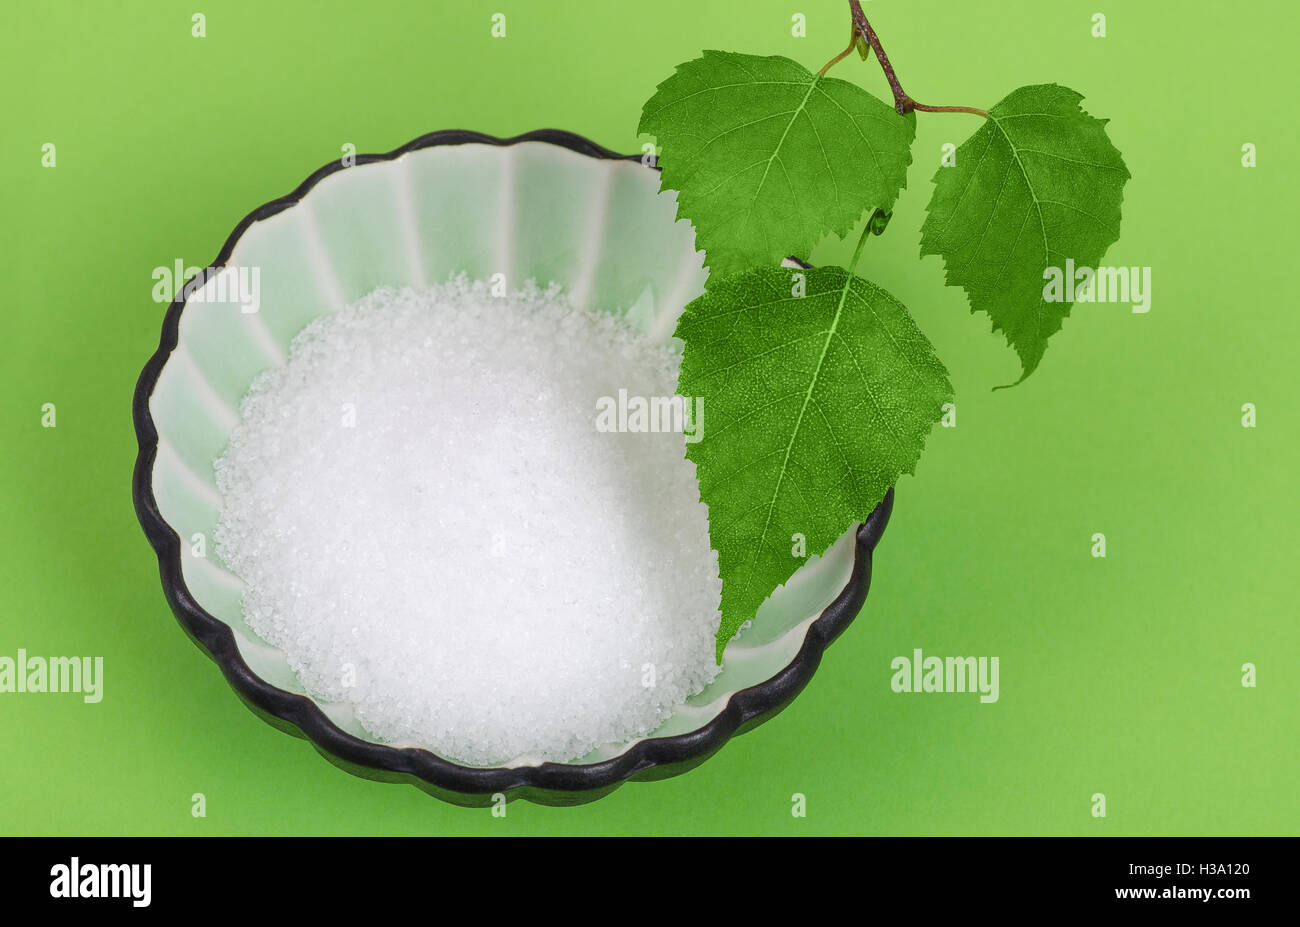 El Xilitol birch azúcar en el tazón de porcelana blanca con hojas de abedul más verde. Alcohol de azúcar blanco granulado, edulcorante sustitutivo. Foto de stock